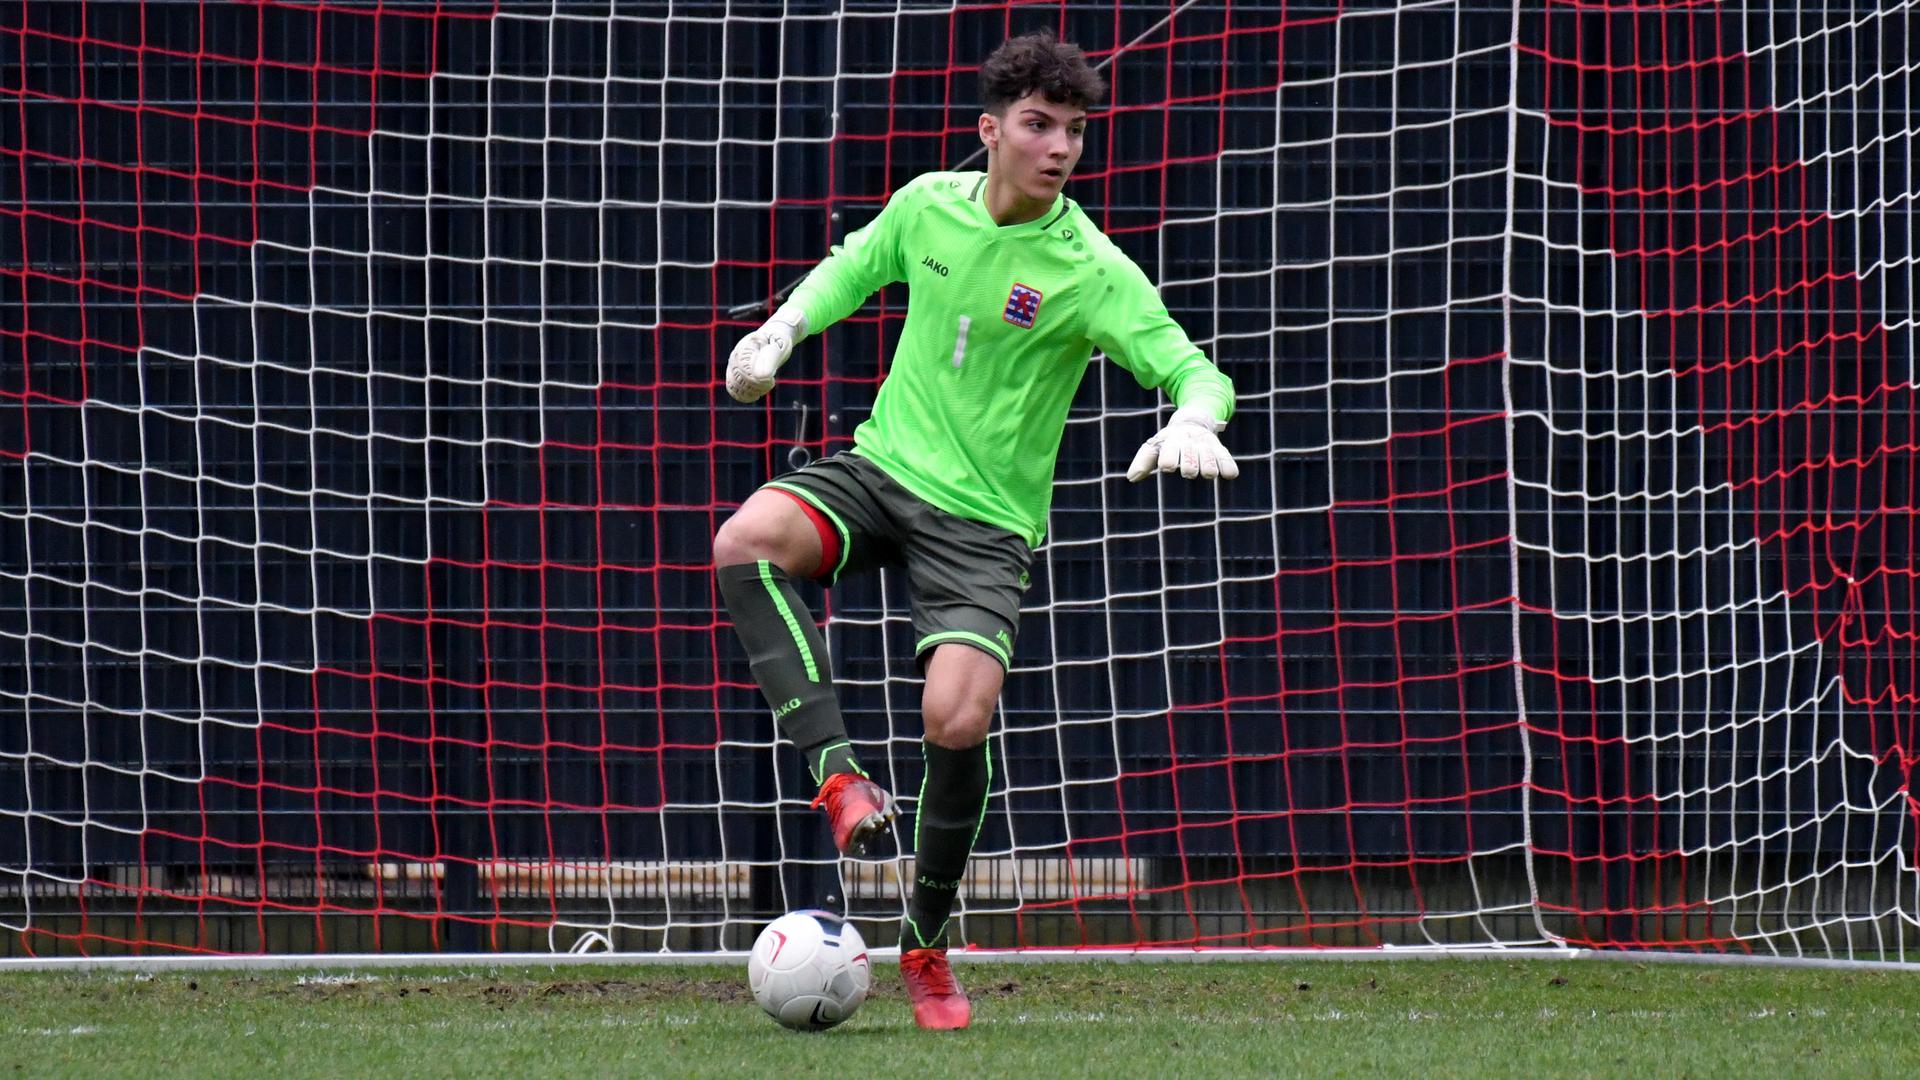 Tiago Pereira, de 16 anos, é um dos guarda-redes convocados por Luc Holtz para o jogo do Luxemburgo frente a Portugal.